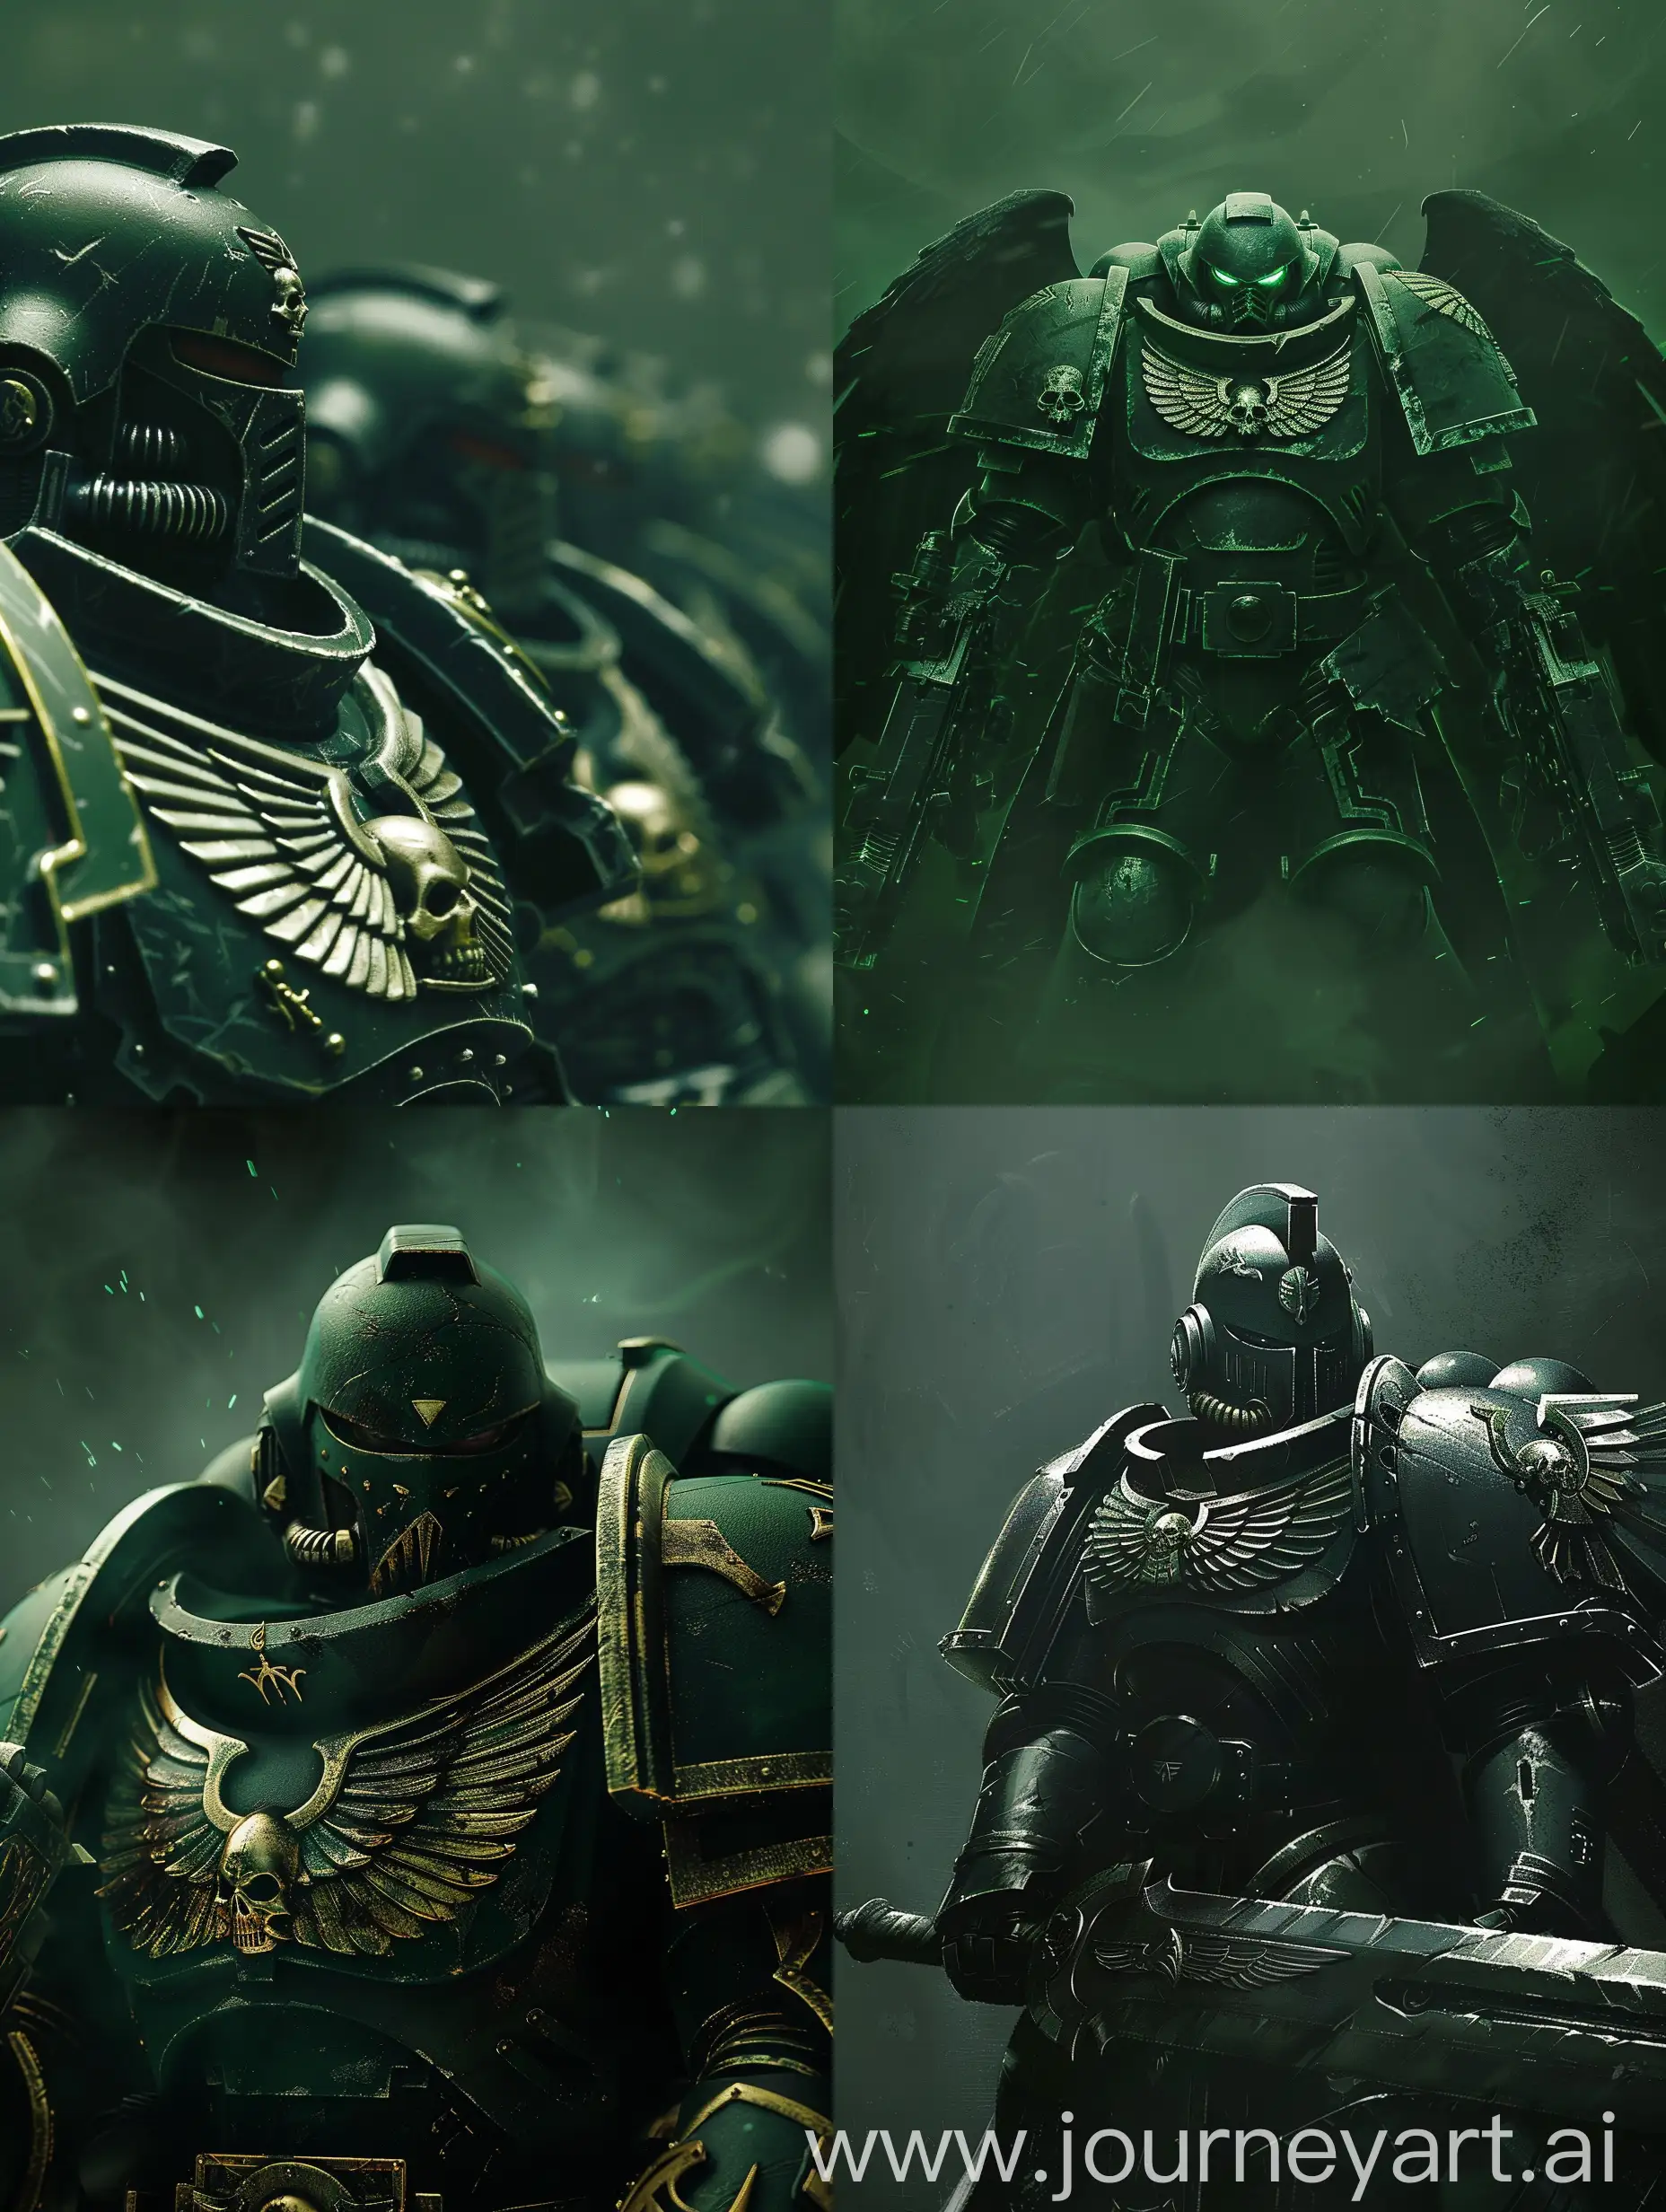 Sinister-Dark-Angels-in-the-Dark-Green-Universe